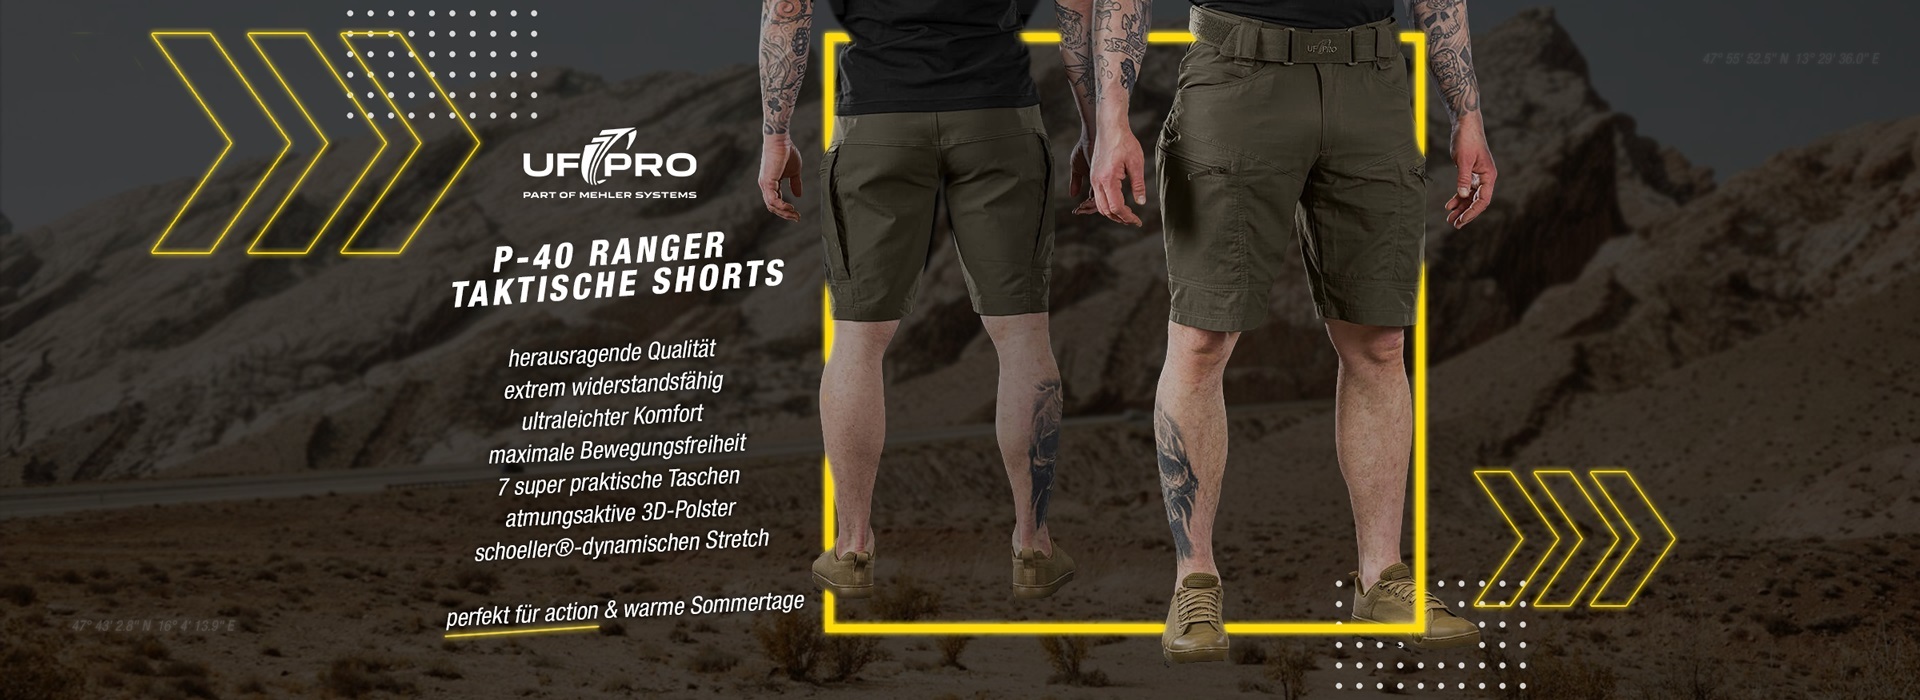 UF PRO® P-40 Ranger Taktische Shorts - Schlanke und leichte Shorts, optimiert für erhöhten Tragekomfort und uneingeschränkte Beweglichkeit.